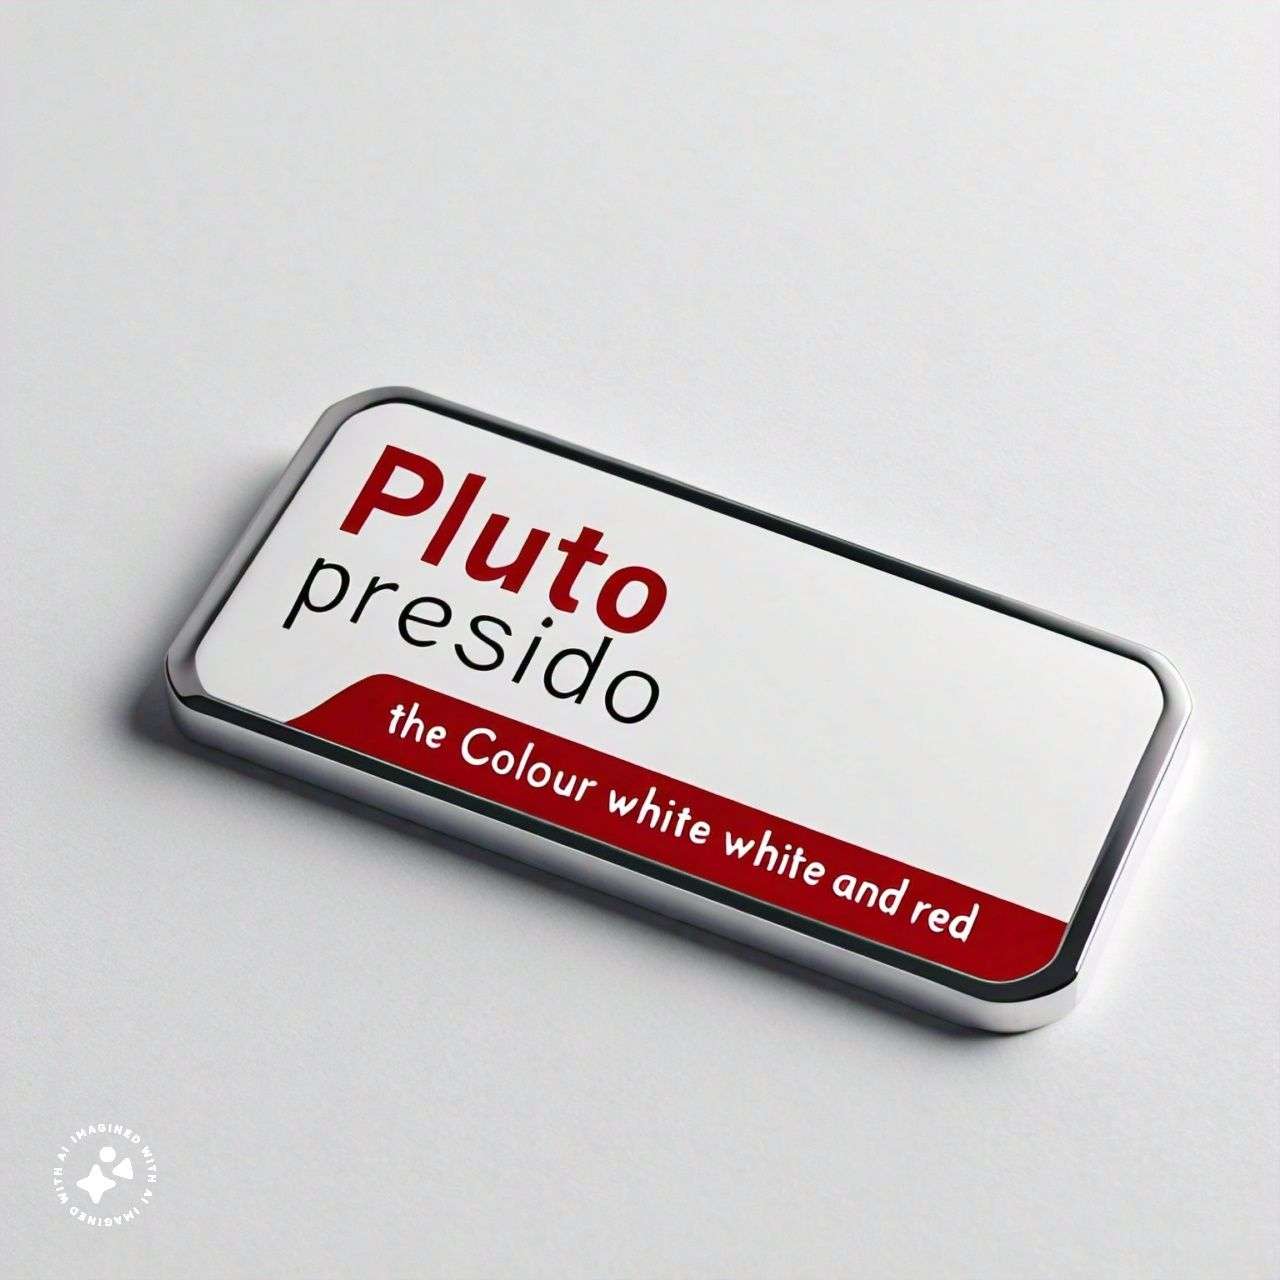 Pluto Presido logo